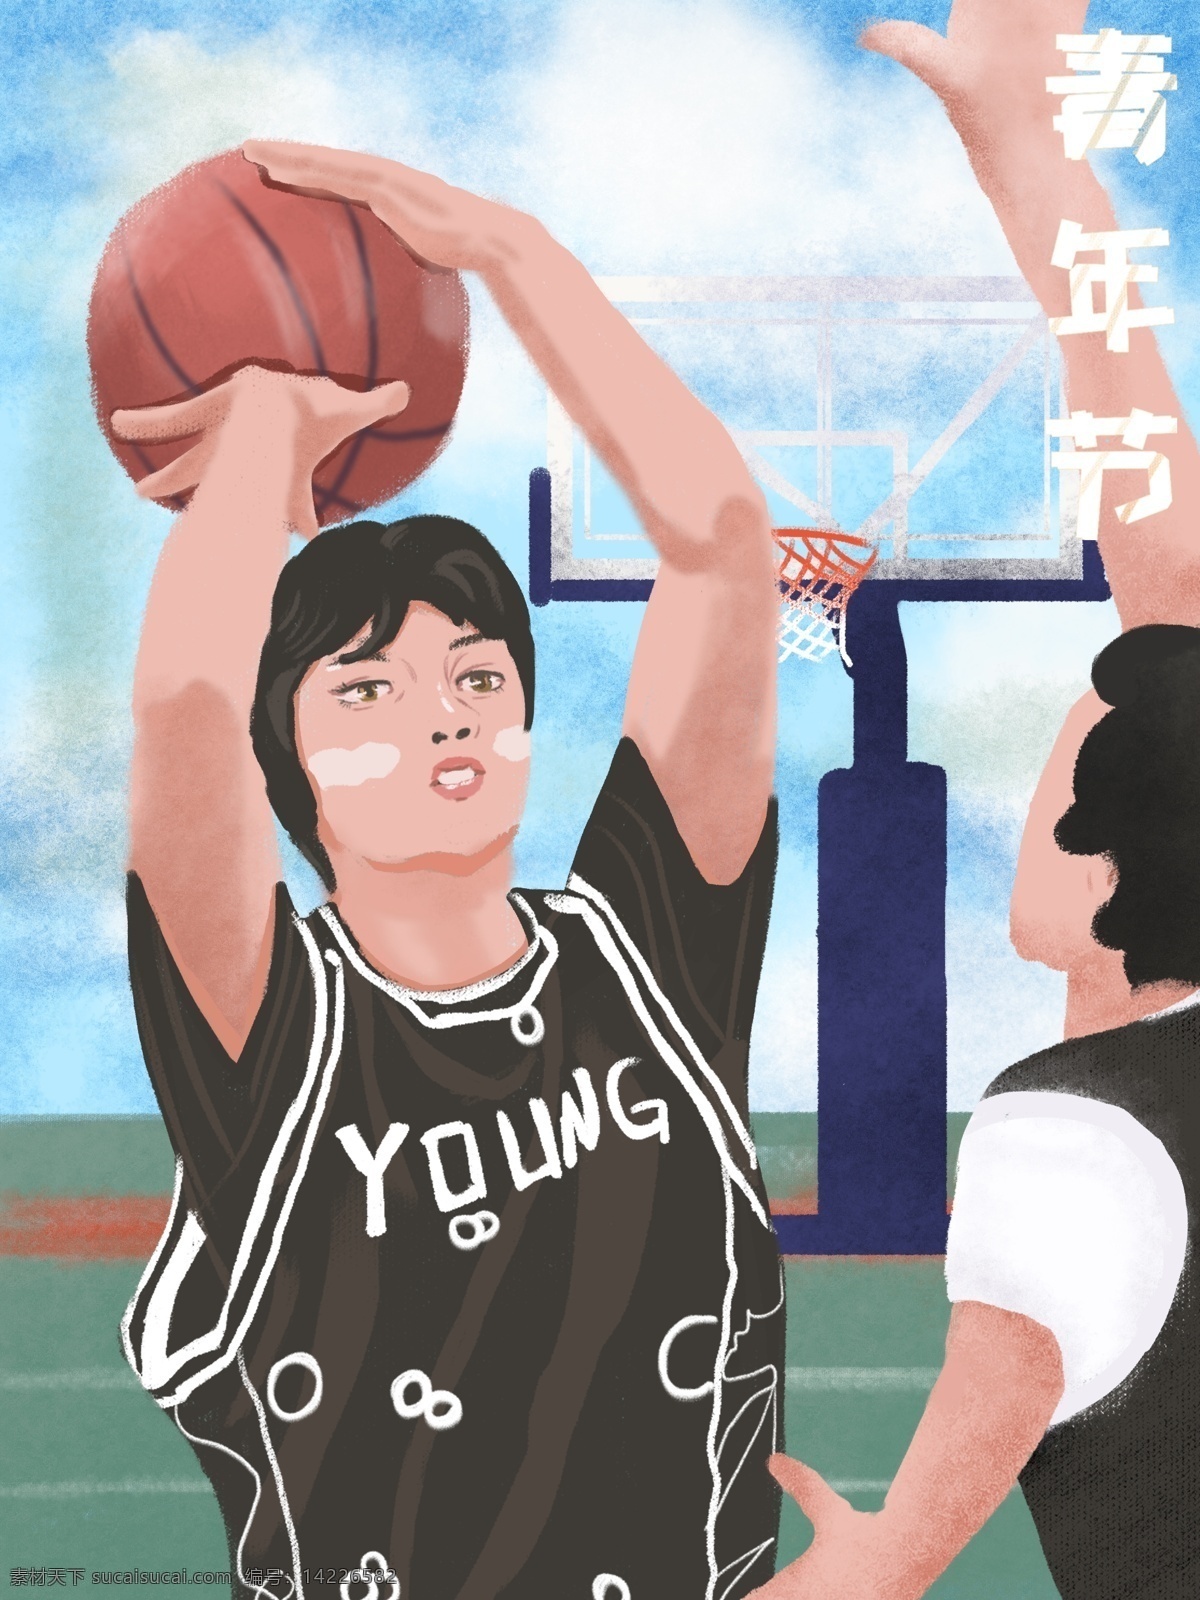 青年节 男 青年 篮球场 篮球 原创 插画 男青年 打篮球 运动 篮球框